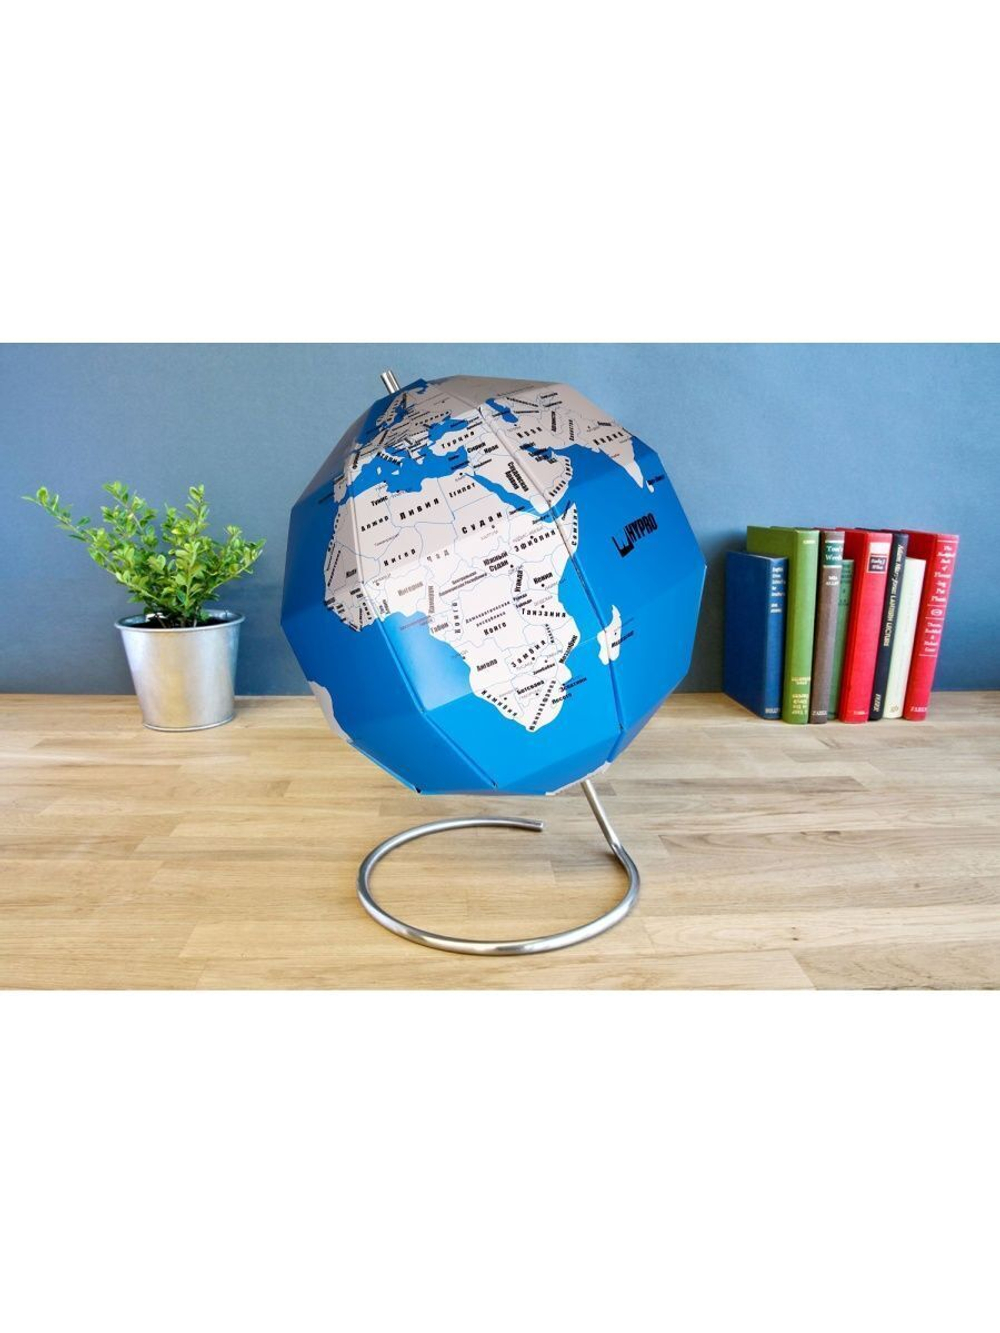 Развивающая игрушка, Учебный материал и пособие для обучения Земли и Карта политическая, подарок раскраска